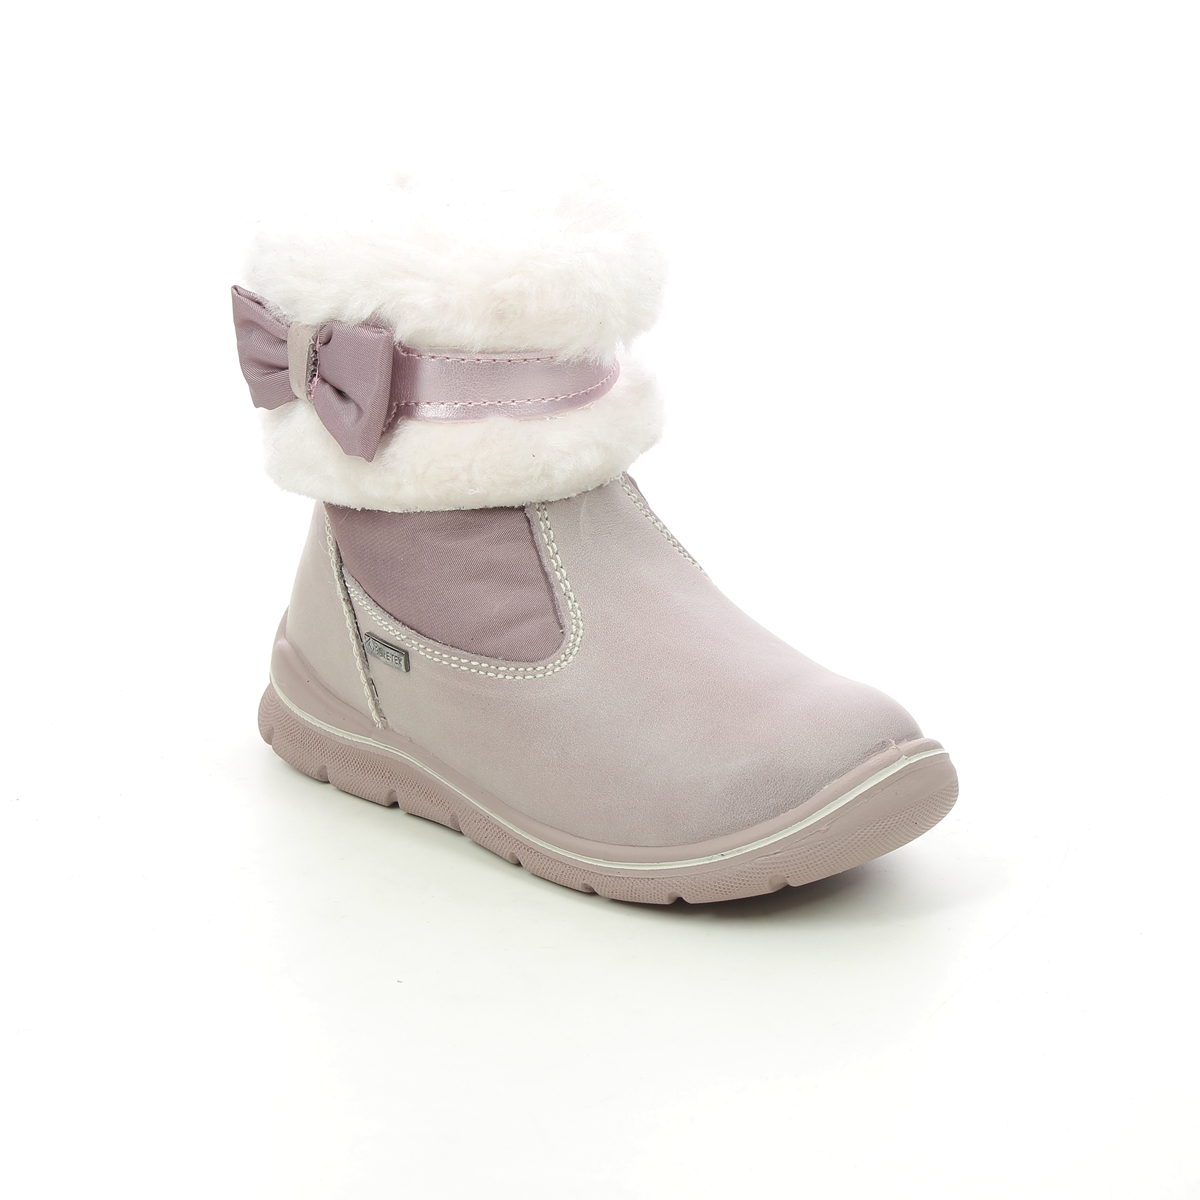 Primigi Skate Gtx 8352633- Pink Leather Toddler Girls Boots